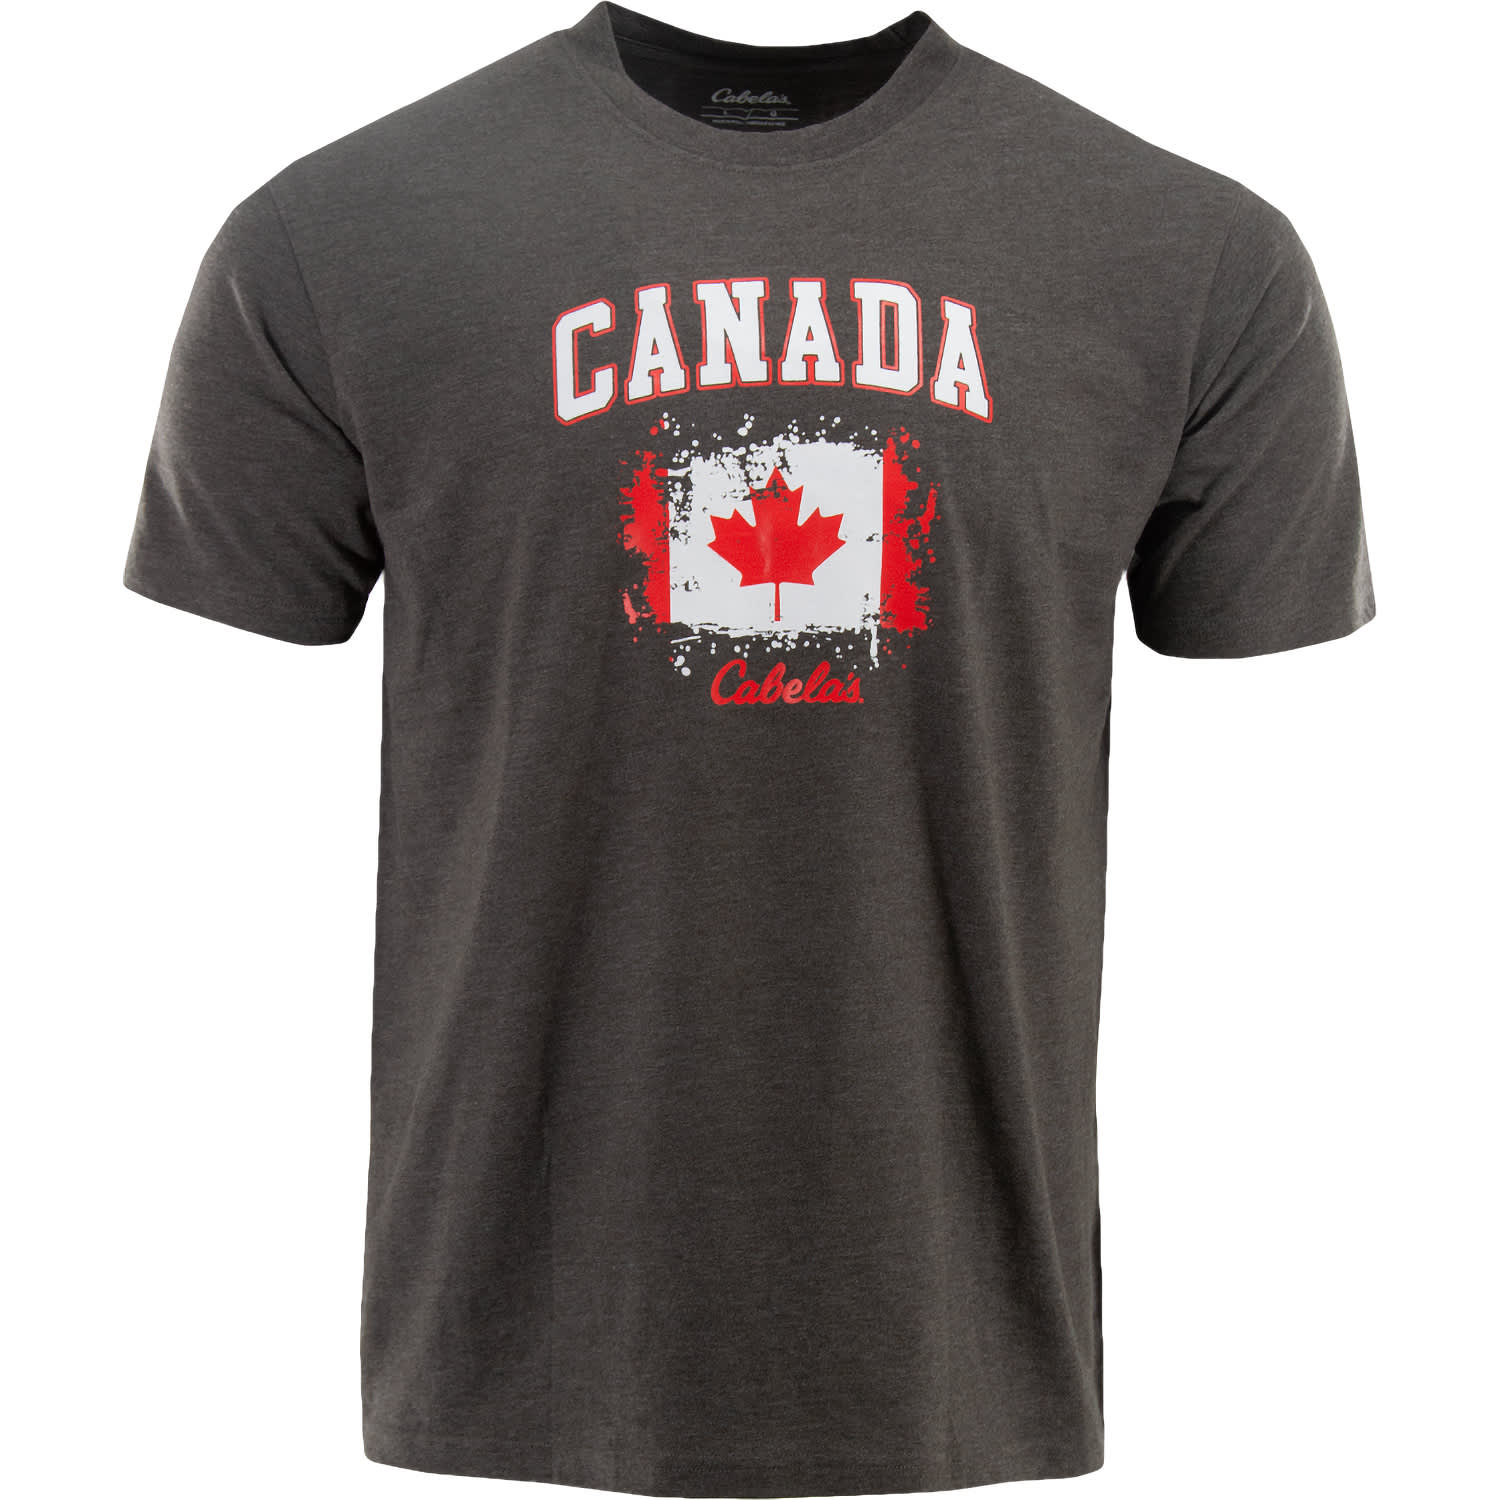 Cabelas Mens Canada Short Sleeve T Shirt Cabelas Canada